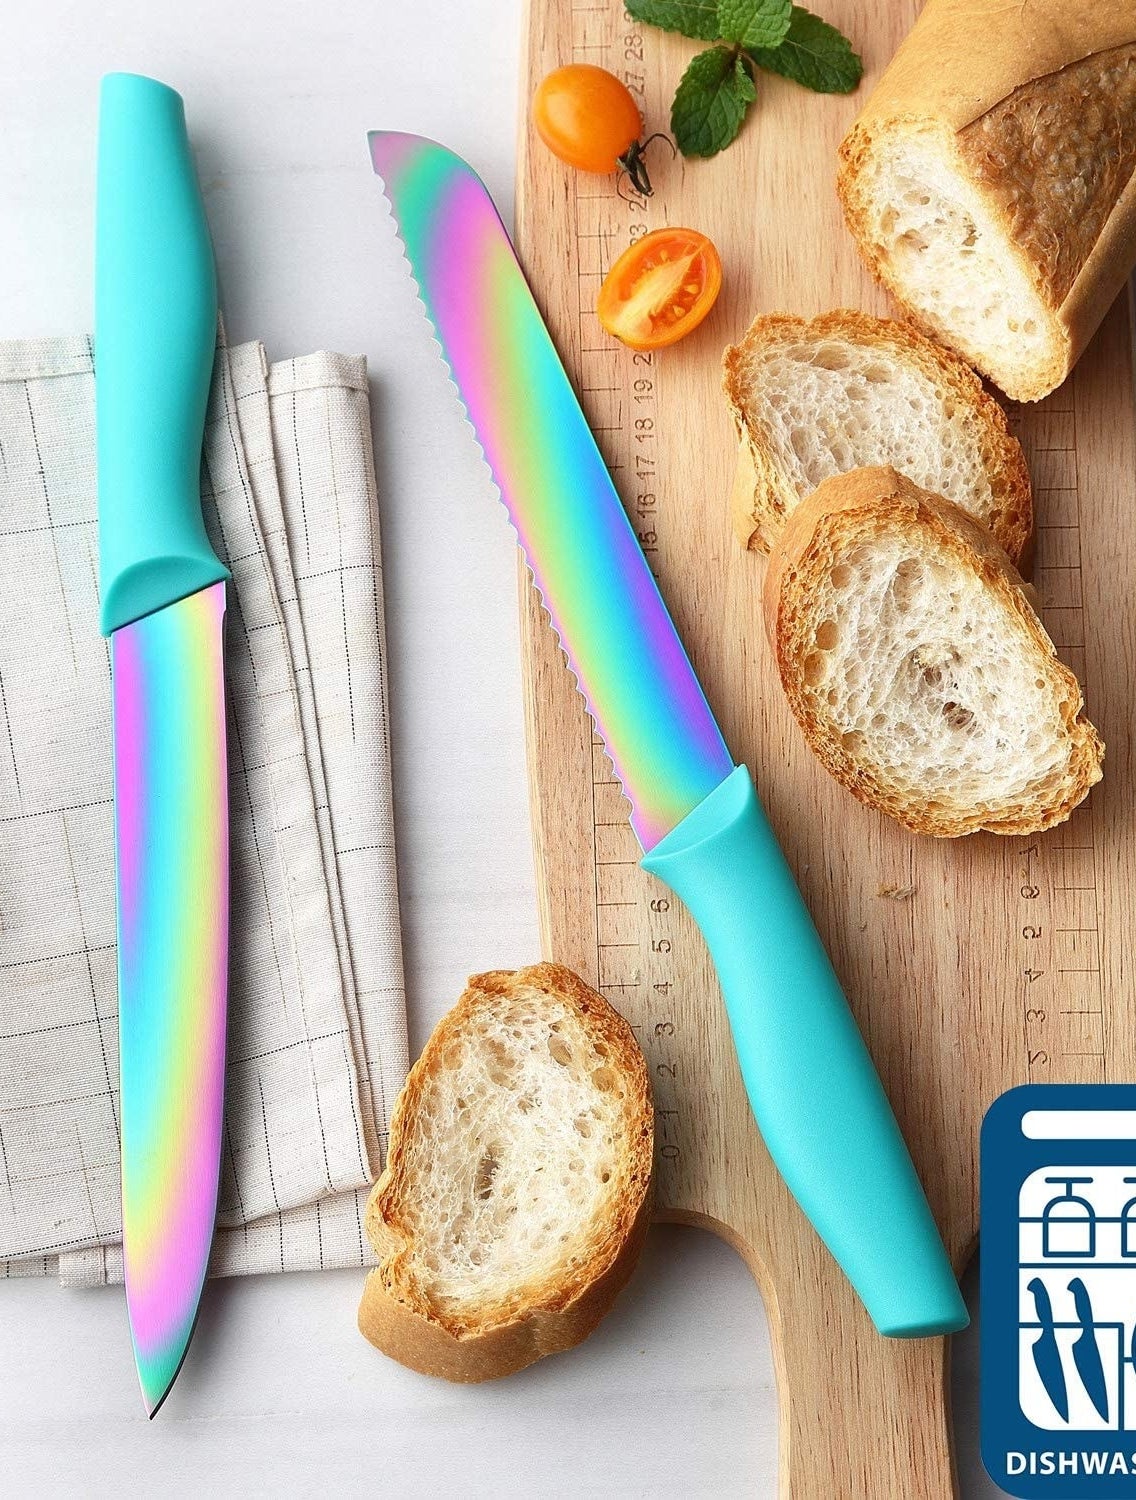 两个彩虹刀砧板绿松石处理和切片面包。